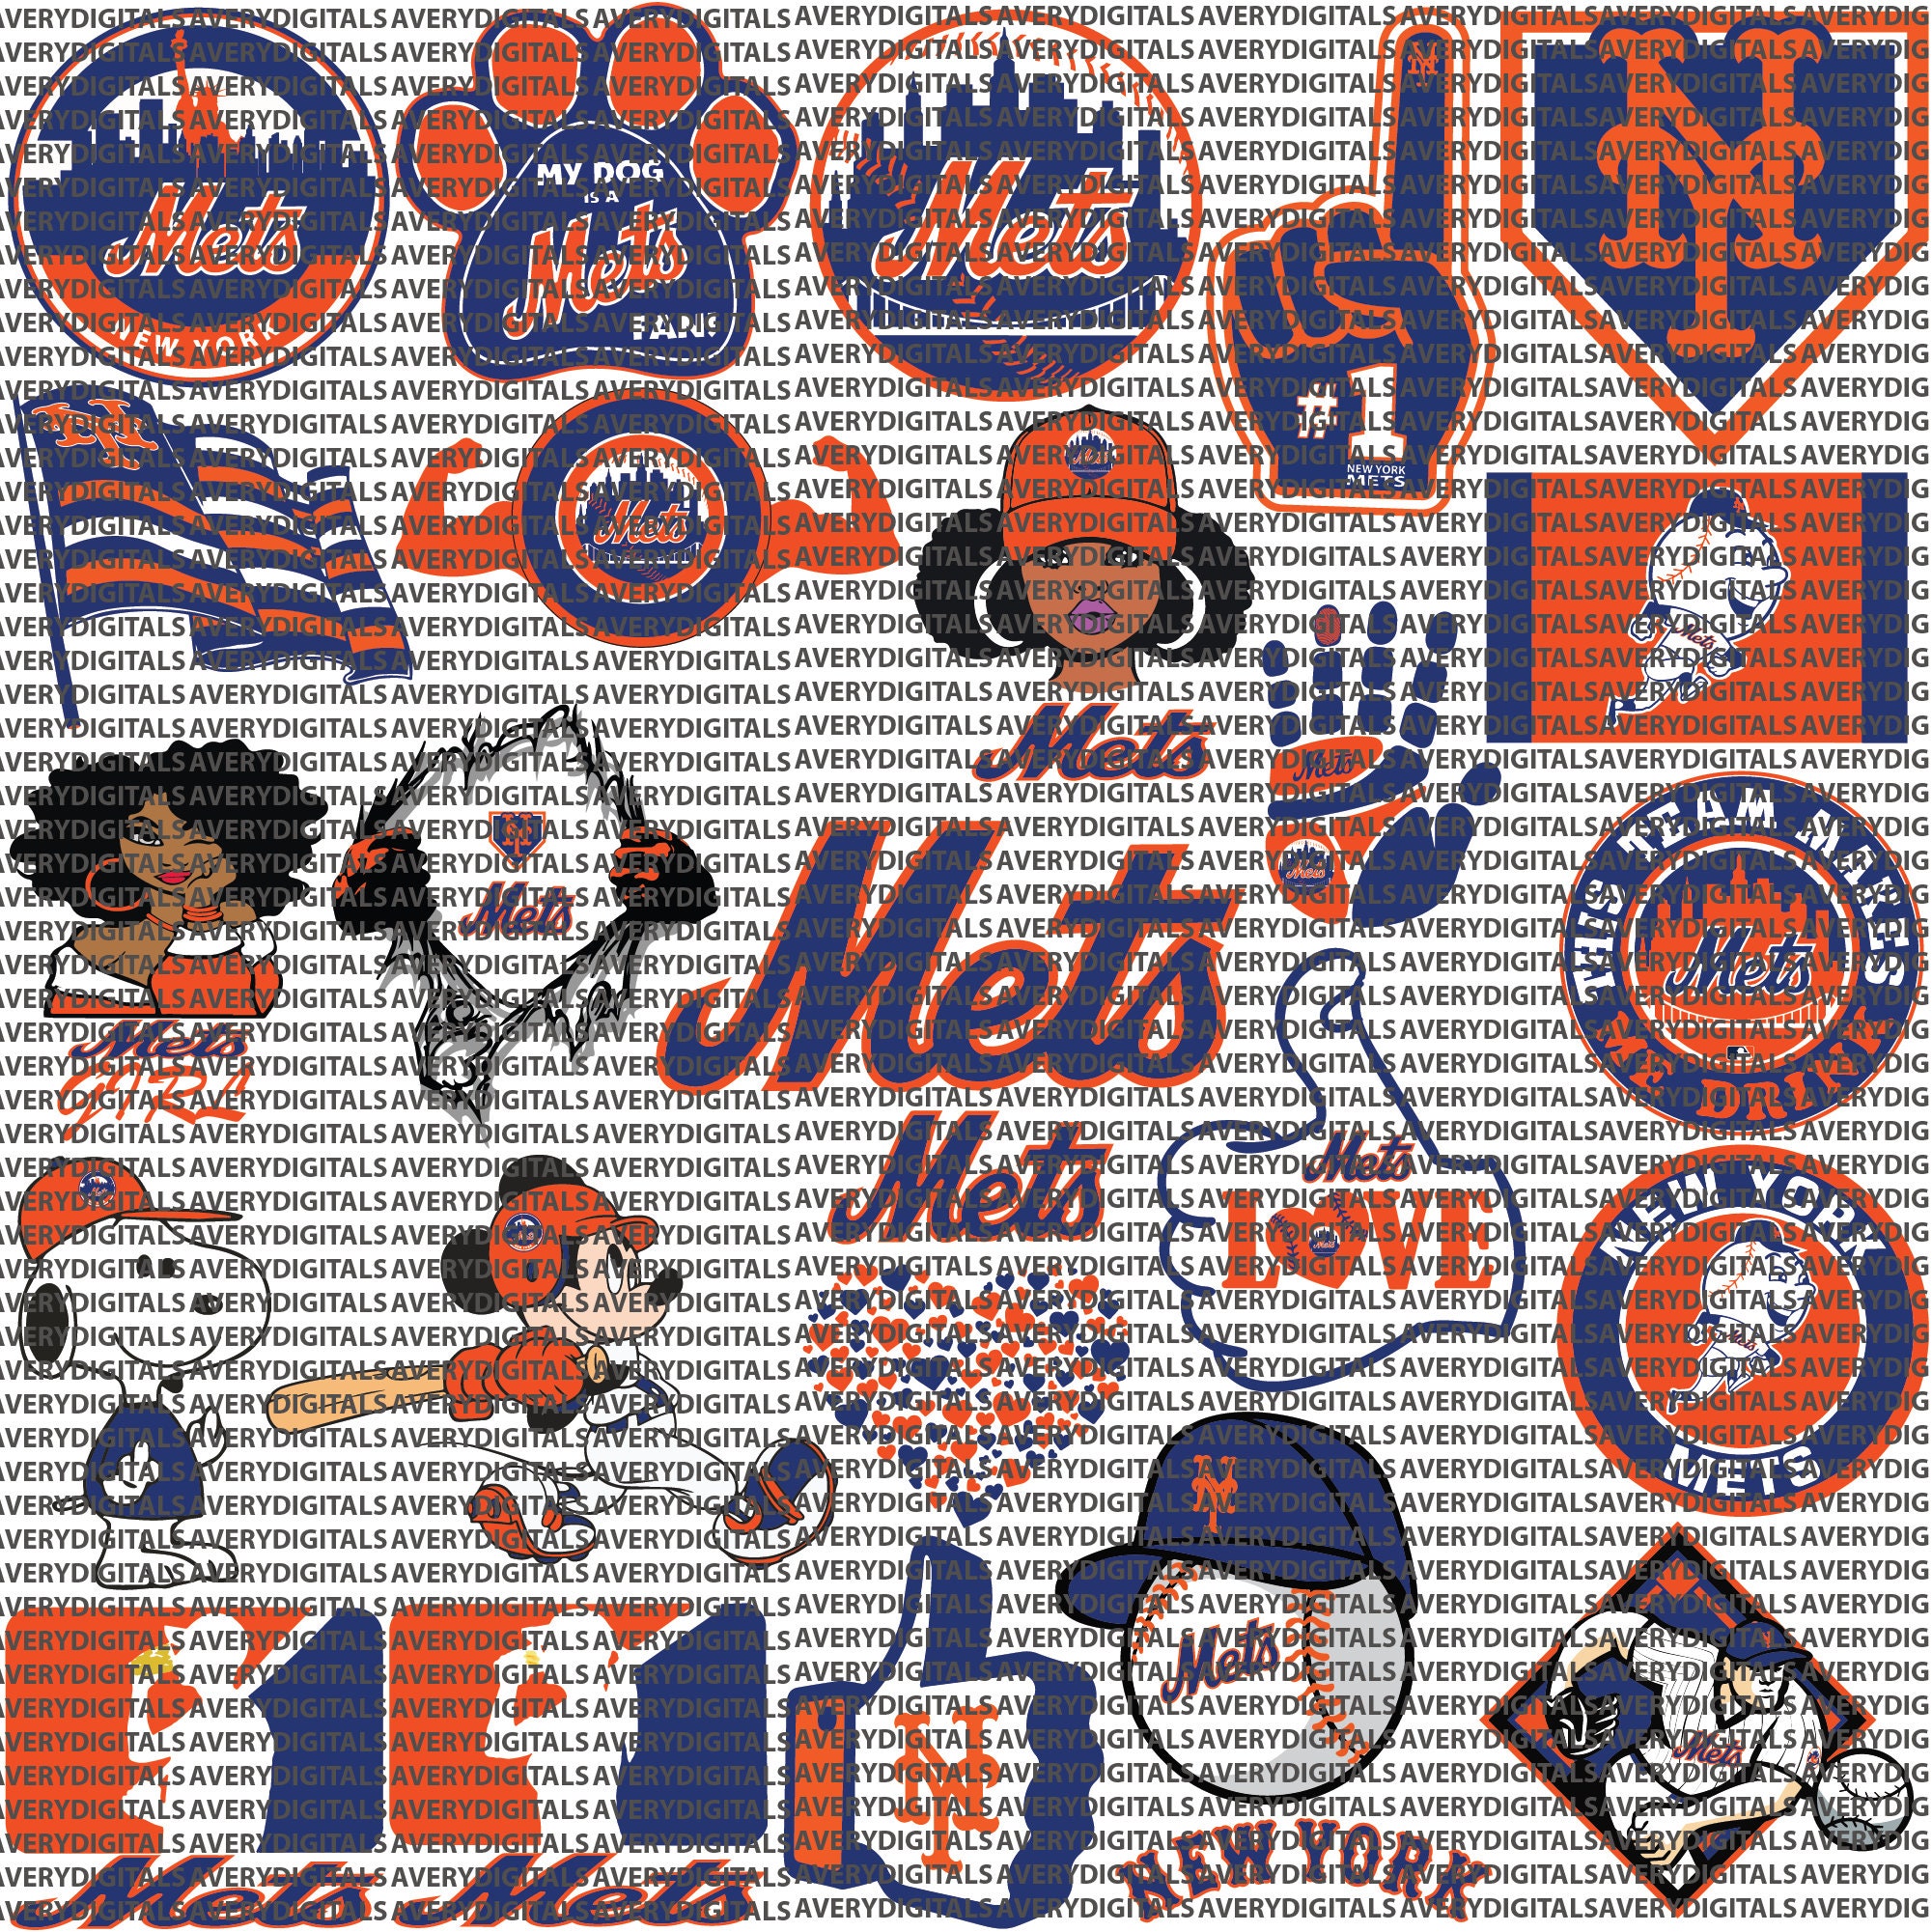 Buy New York Mets Logo Svg Png online in America